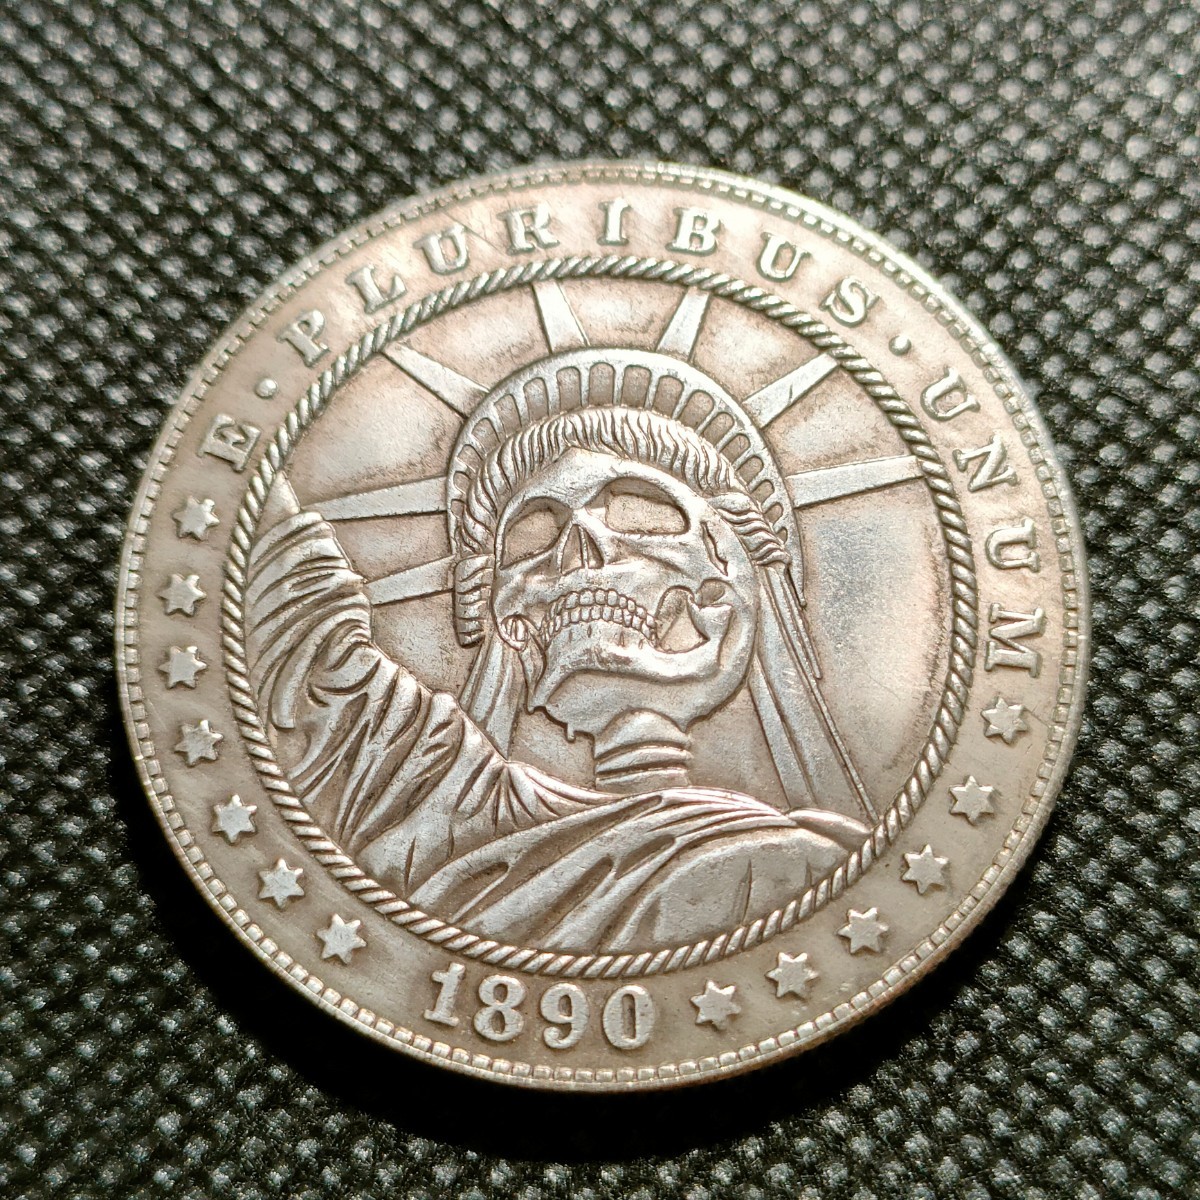 5011 アメリカ古銭 ルンペン貨幣 約38mm イーグル チャレンジコイン コイン アンティーク ホーボーの画像1